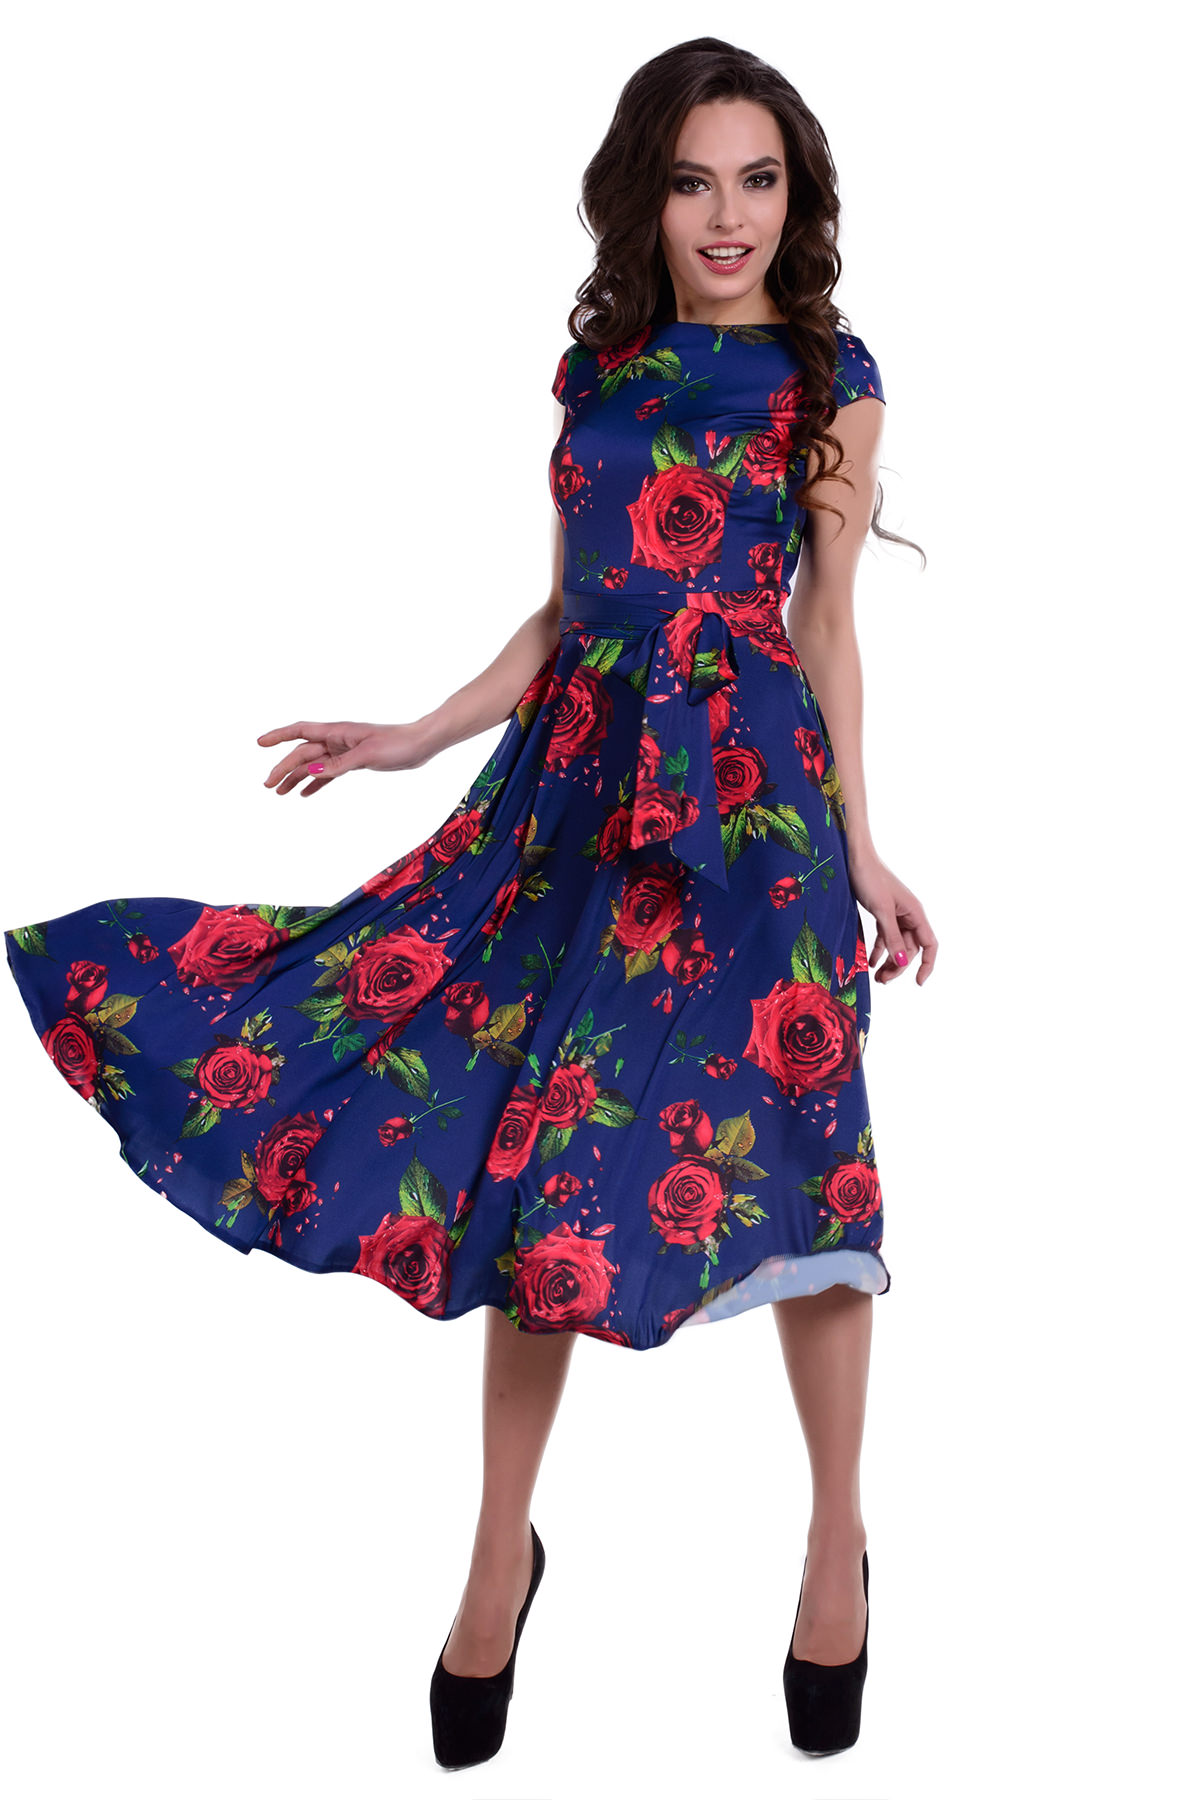 Женская одежда от производителя Modus Платье Рубина принт атлас шифон